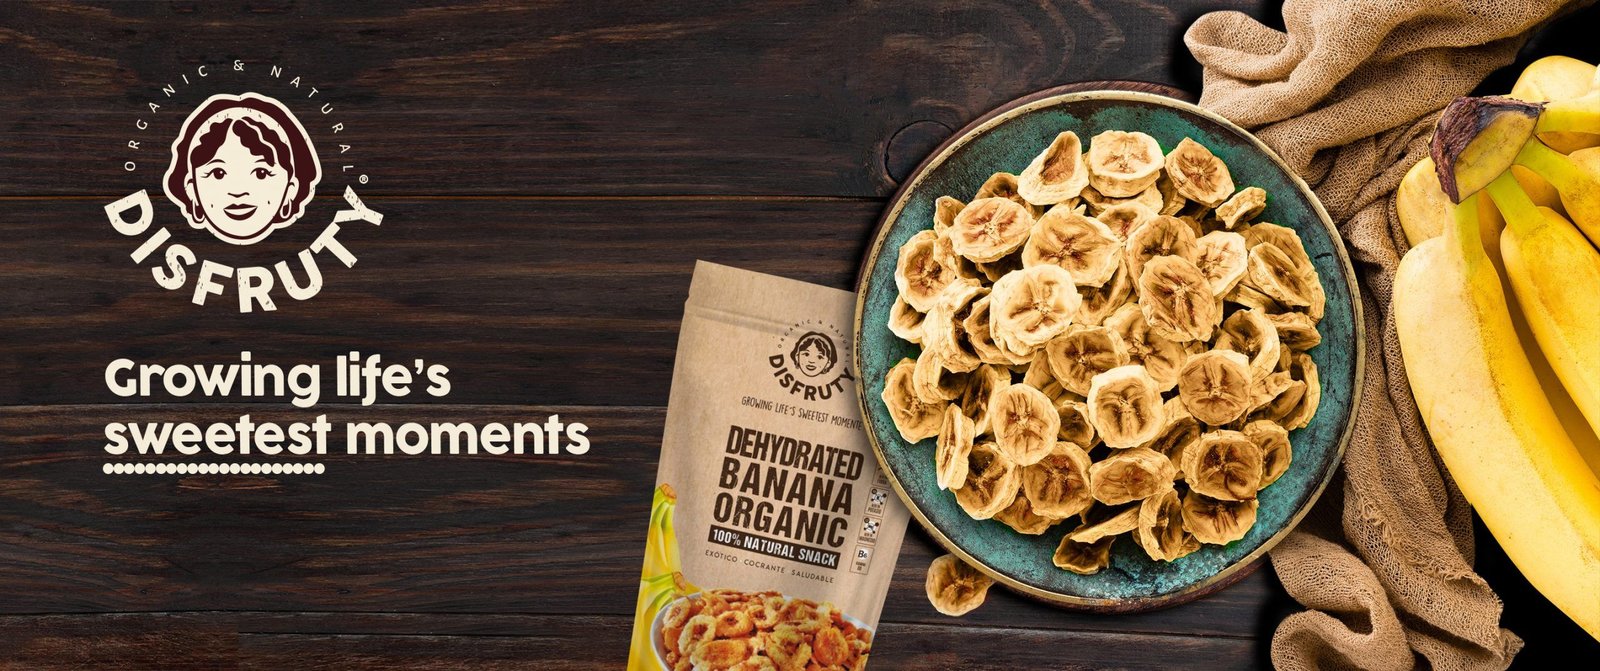 Key Visual del rebranding de la marca de alimentación disfruty agencia de branding y packaging